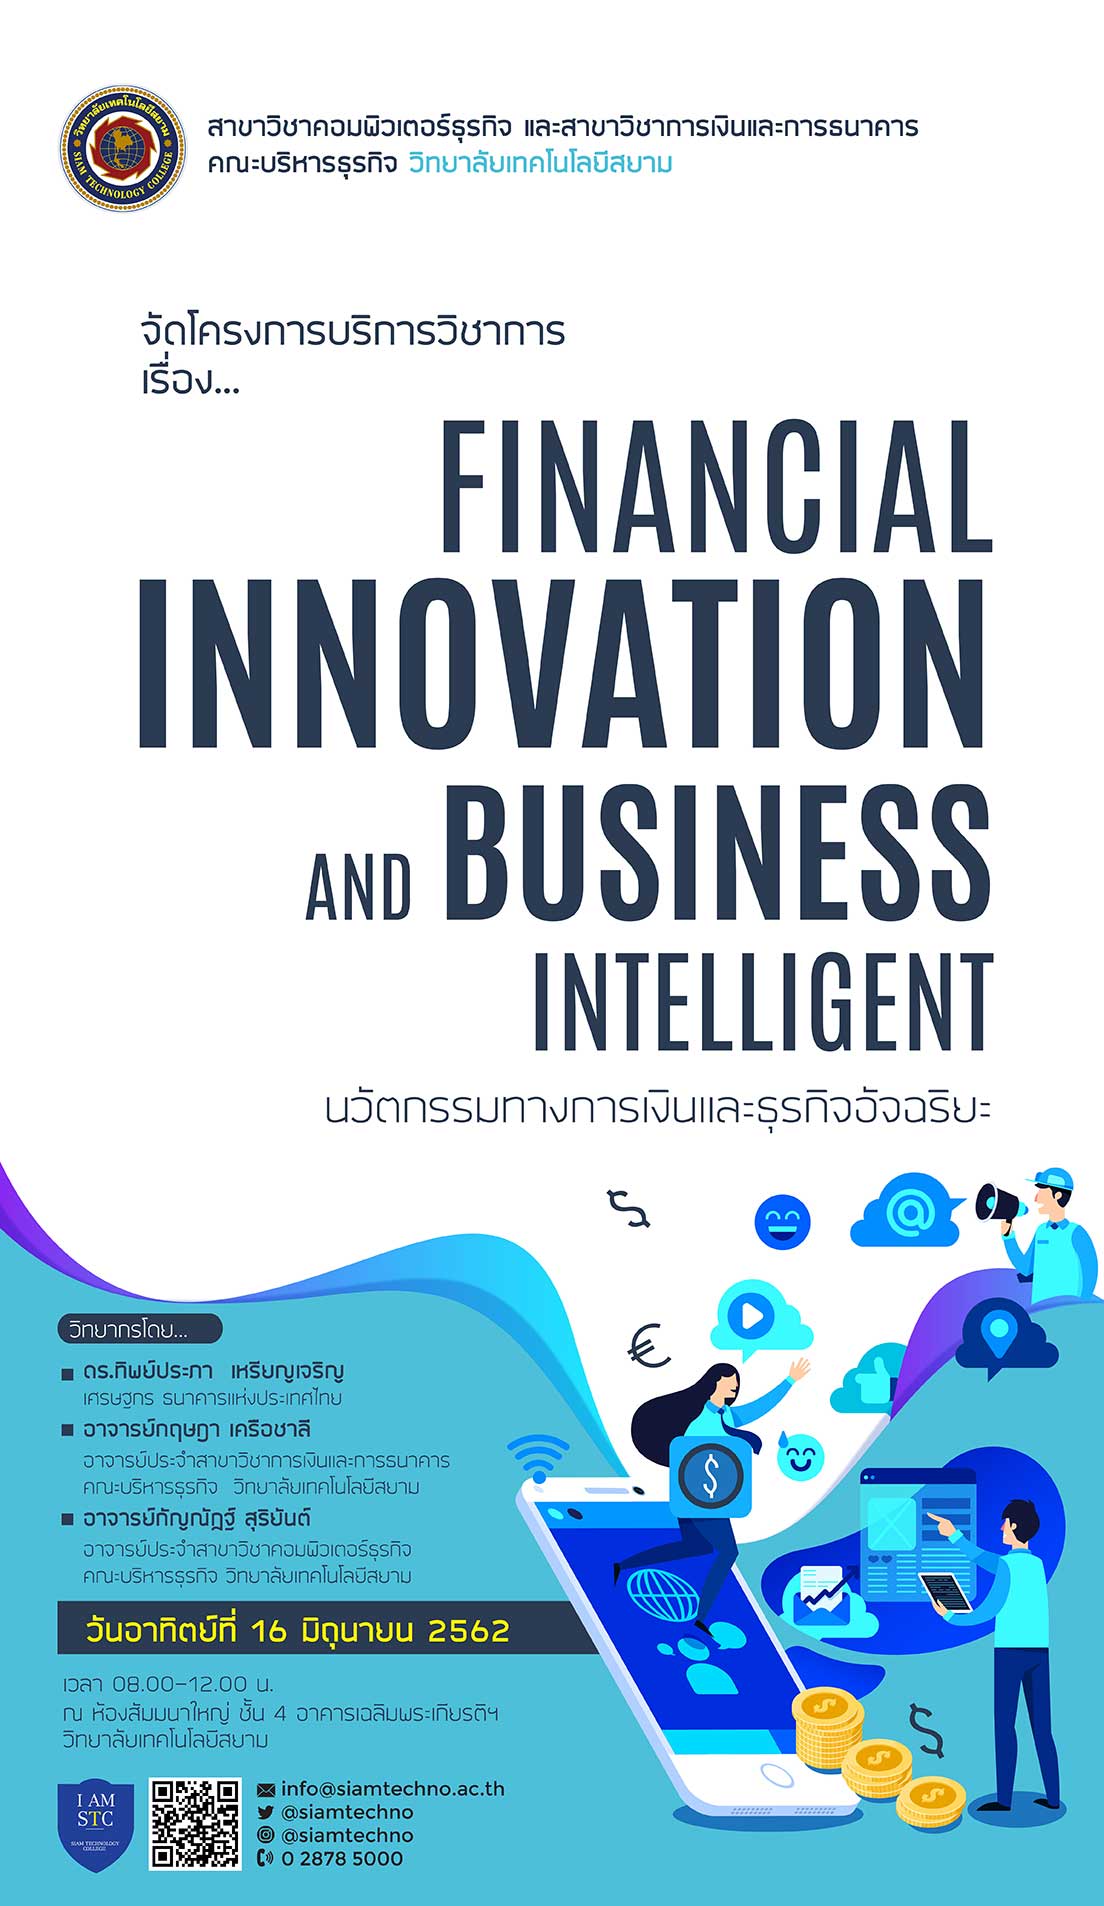 โครงการบริการวิชาการ เรื่อง Financial Innovation and Business Intelligent ในวันอาทิตย์ที่ 16 มิถุนายน 2562